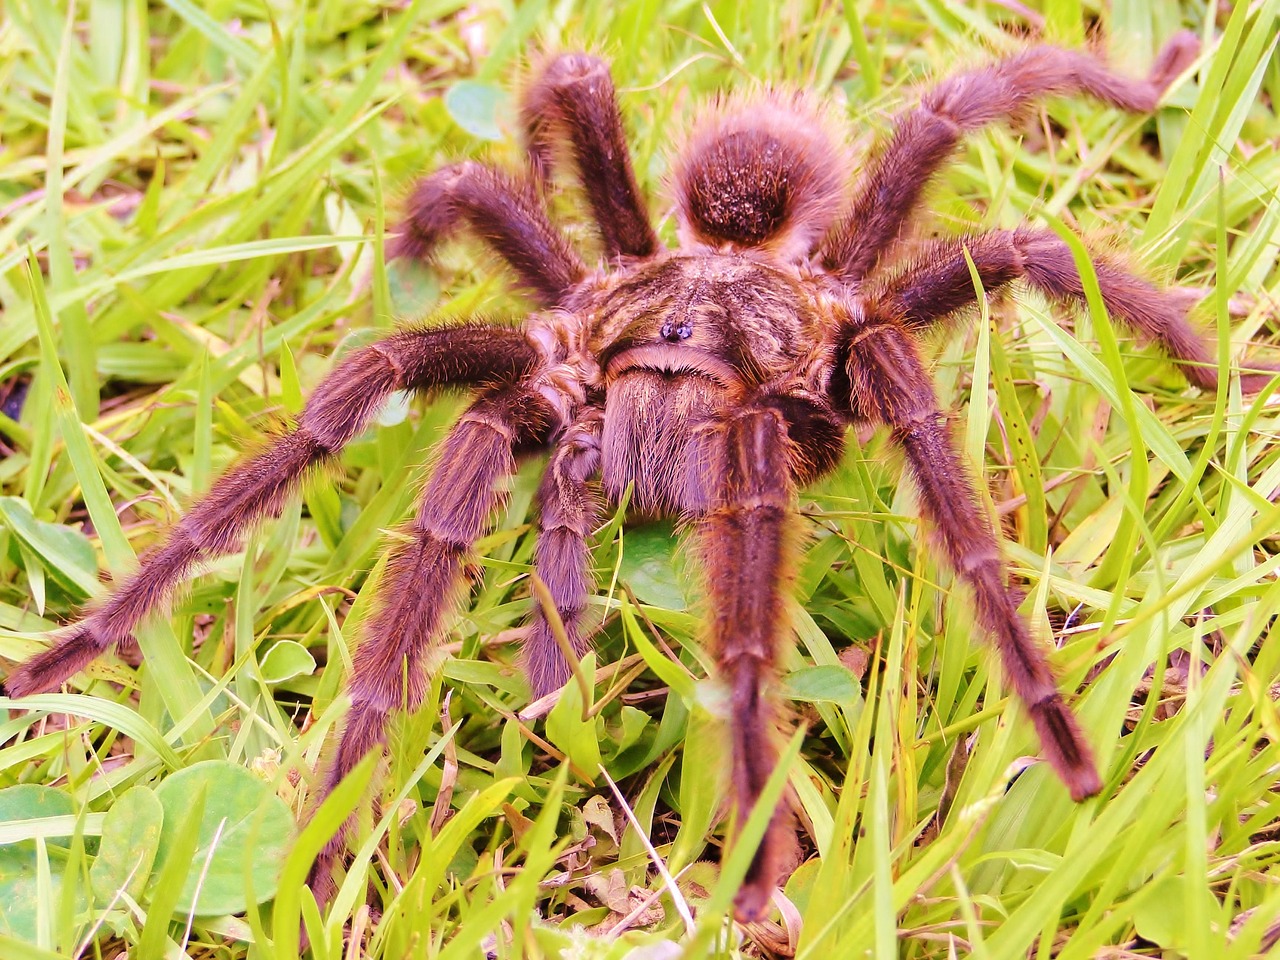 spider araquinidio eight legs free photo